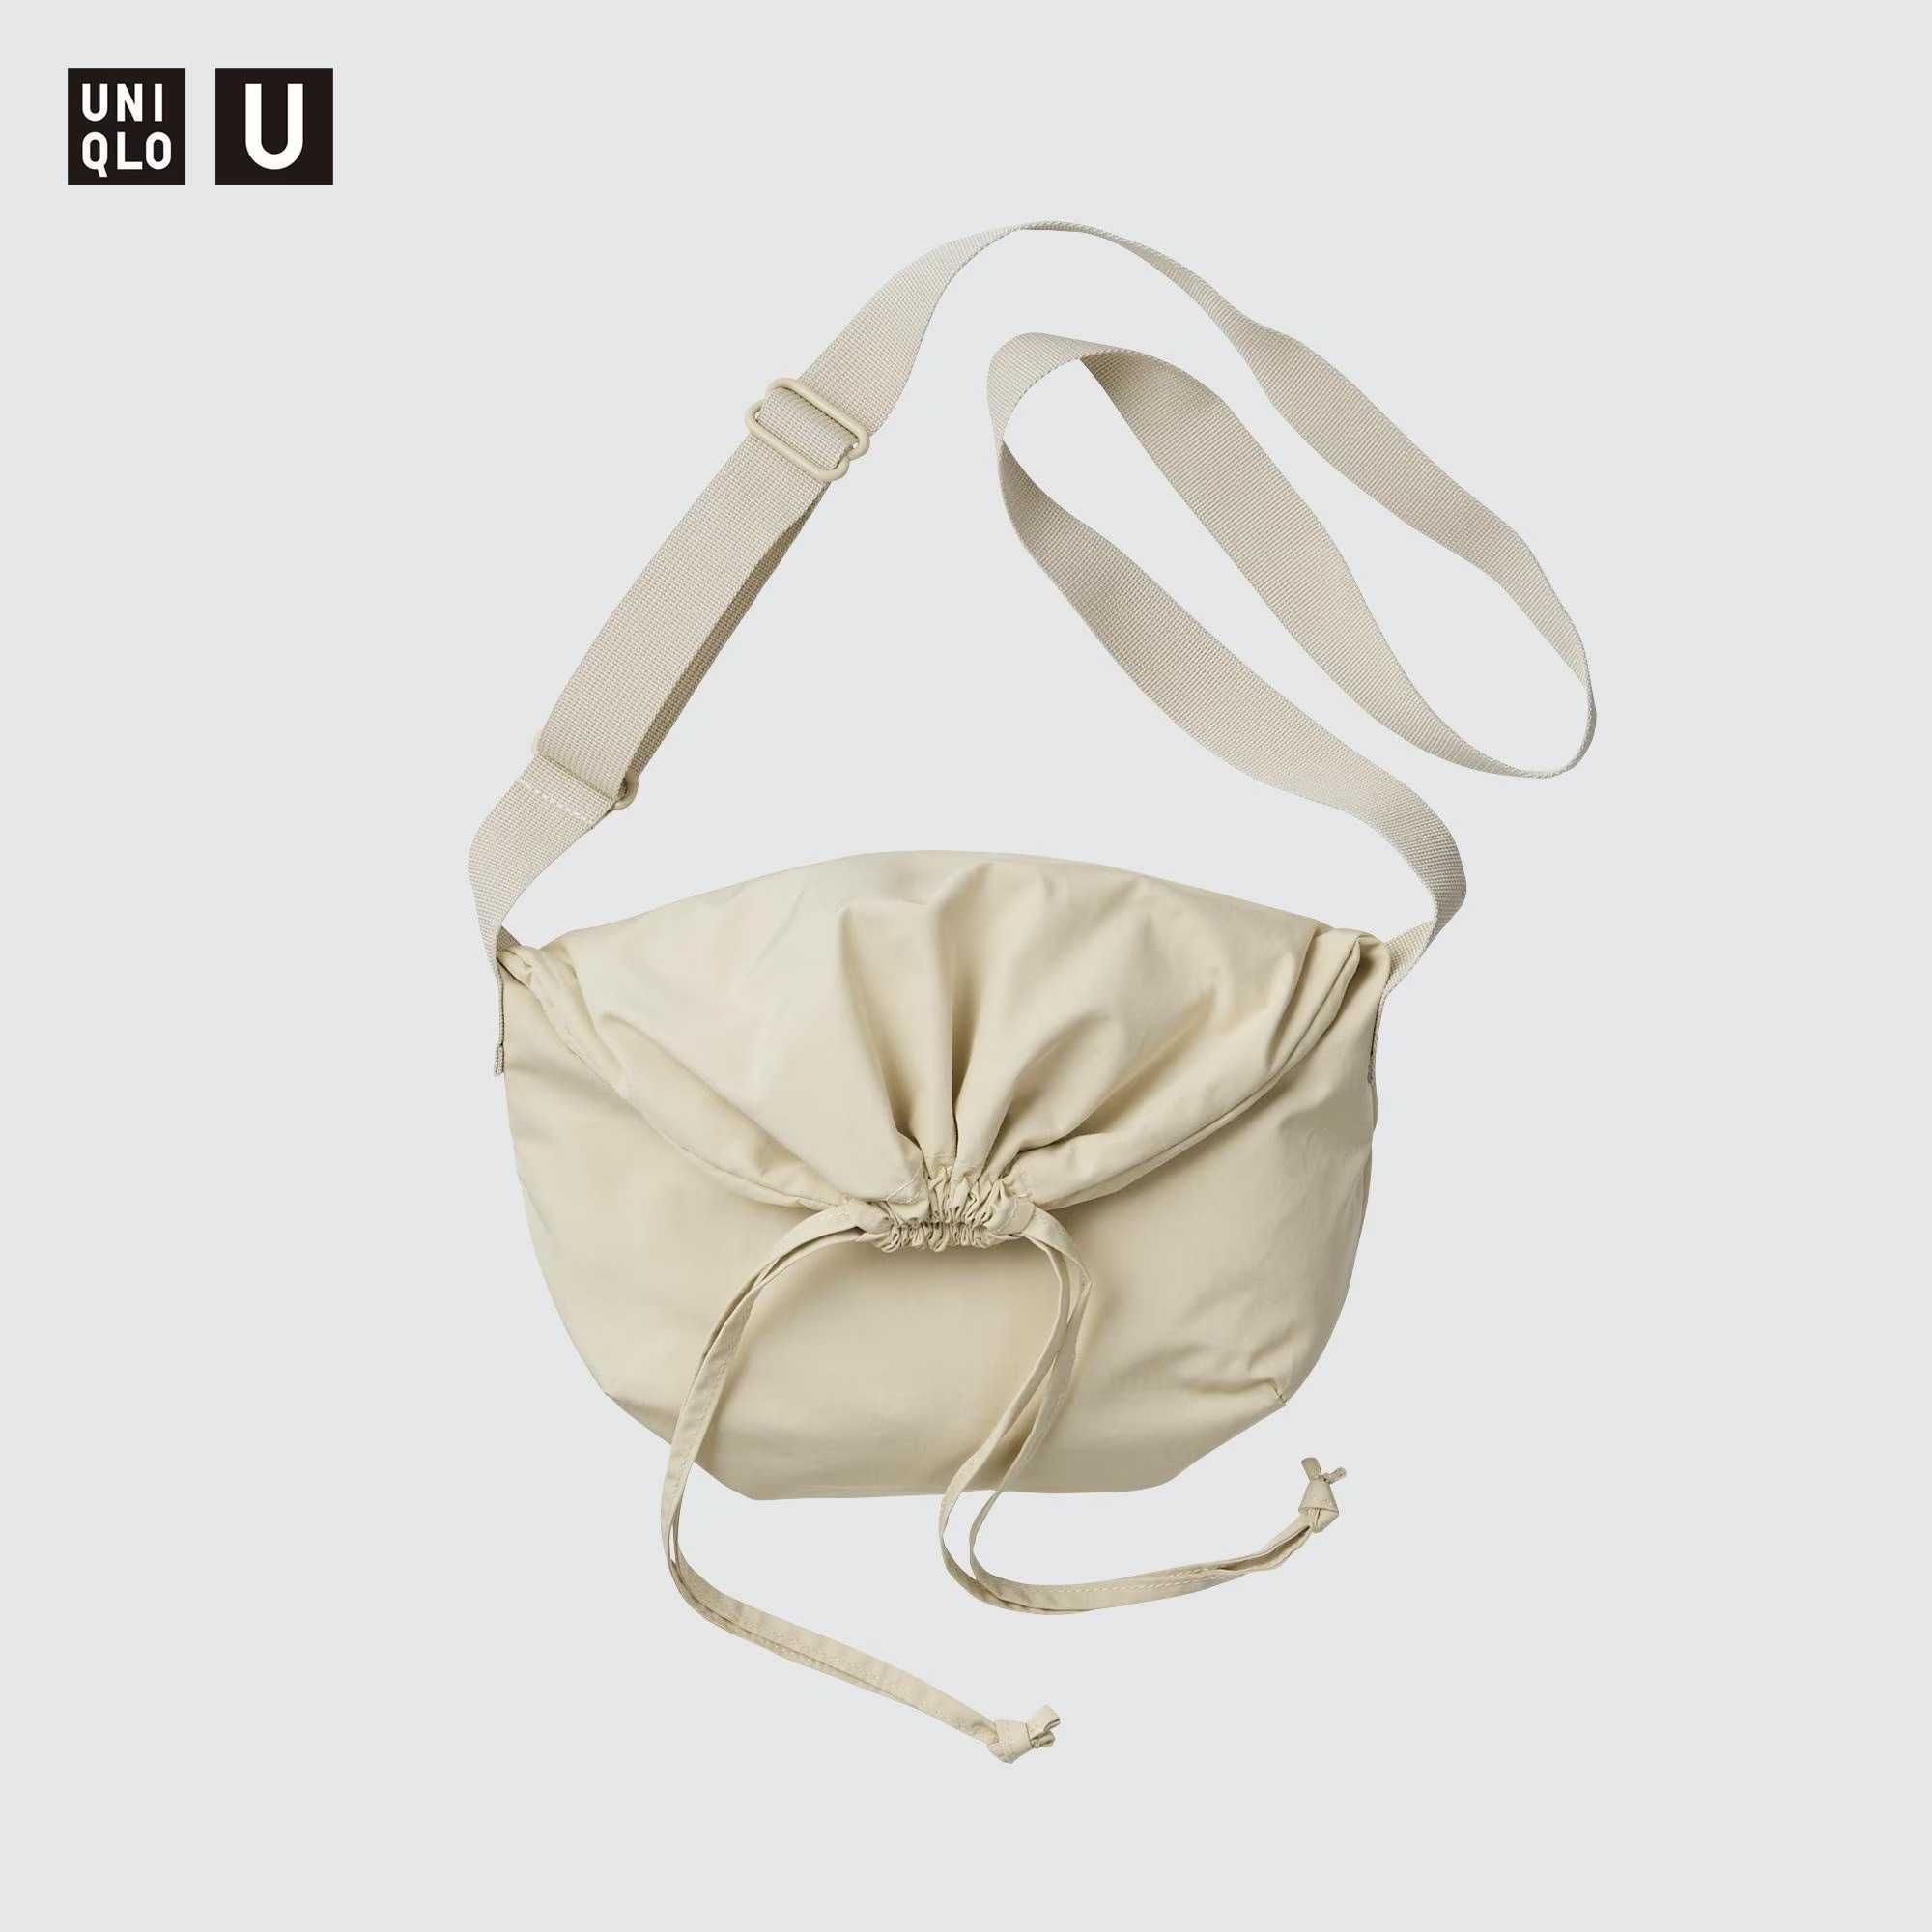 Uniqlo Mini Bag / White Off-white / Torebka na ramię sznurowana